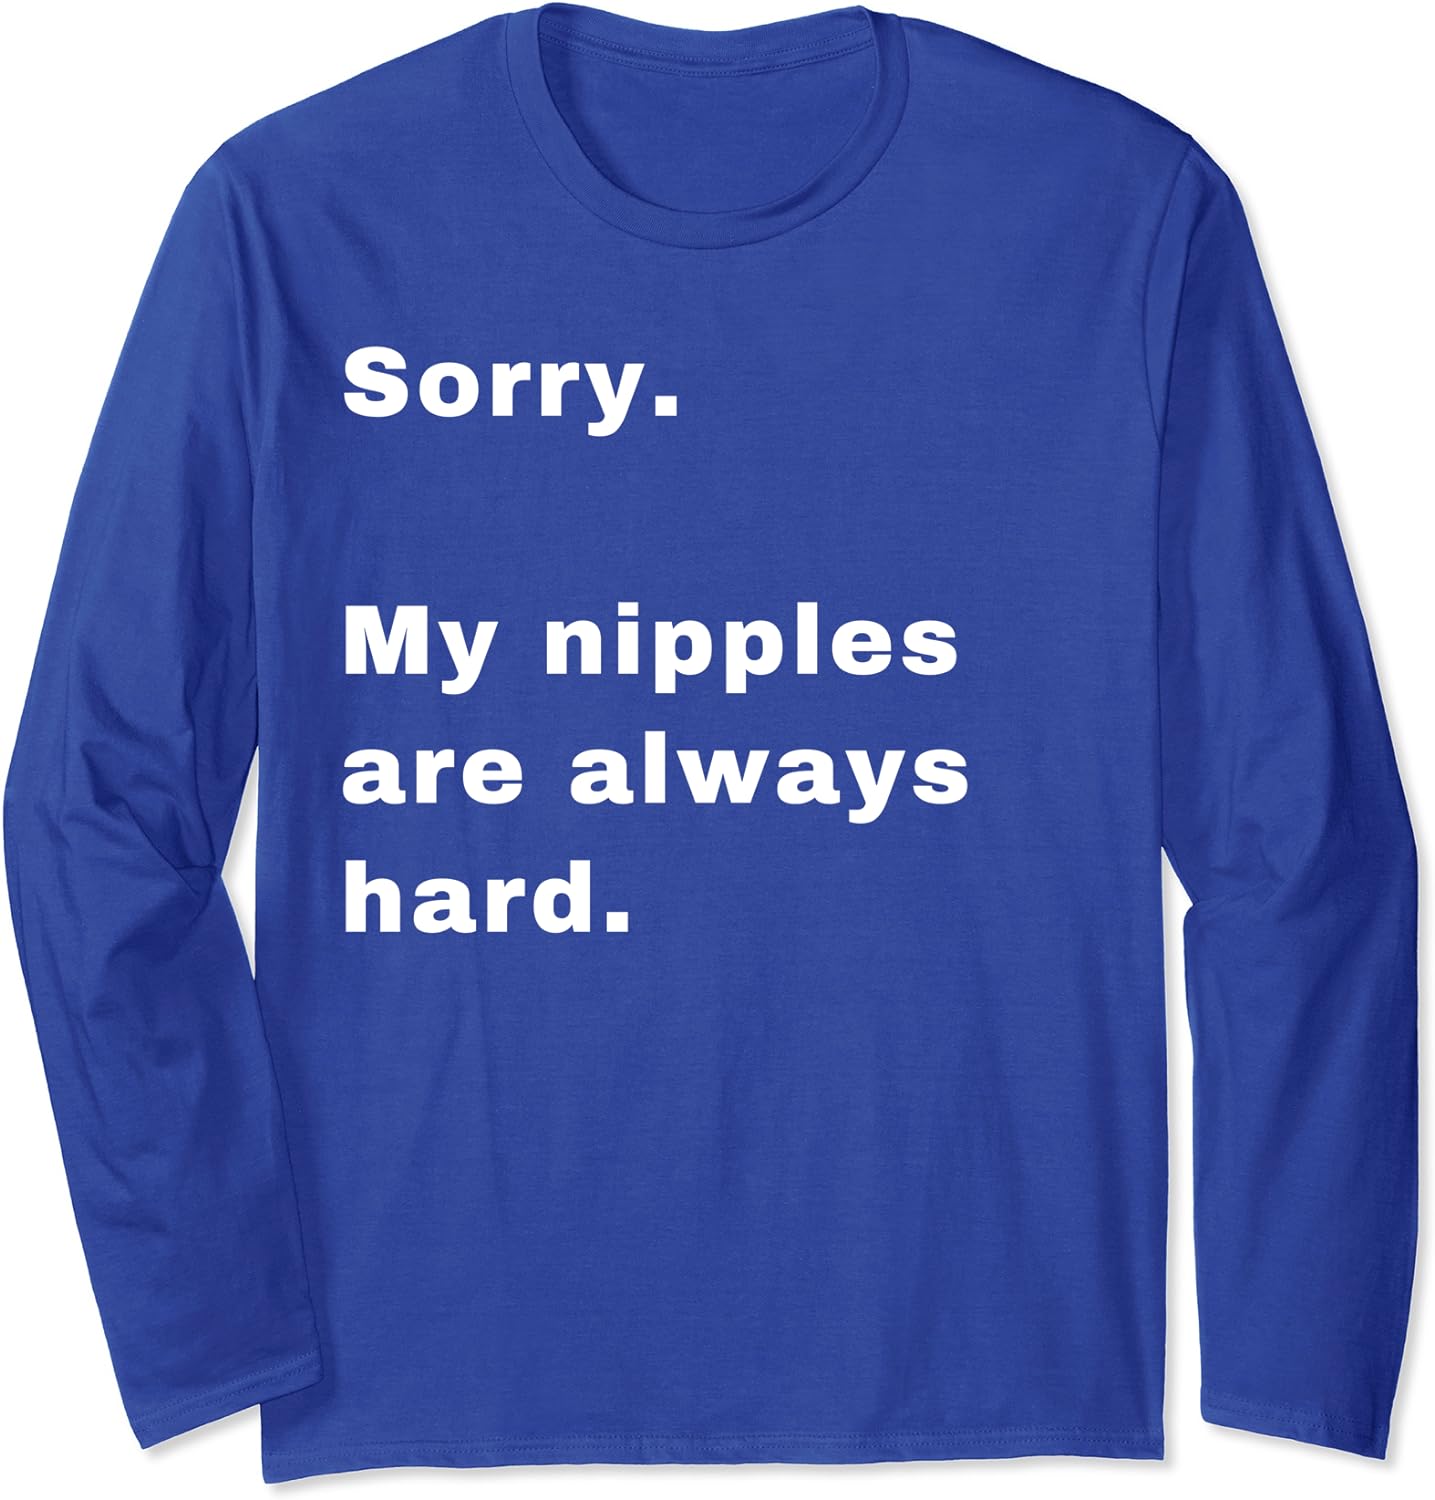 amoo sodiq recommends hard nipples t shirt pic